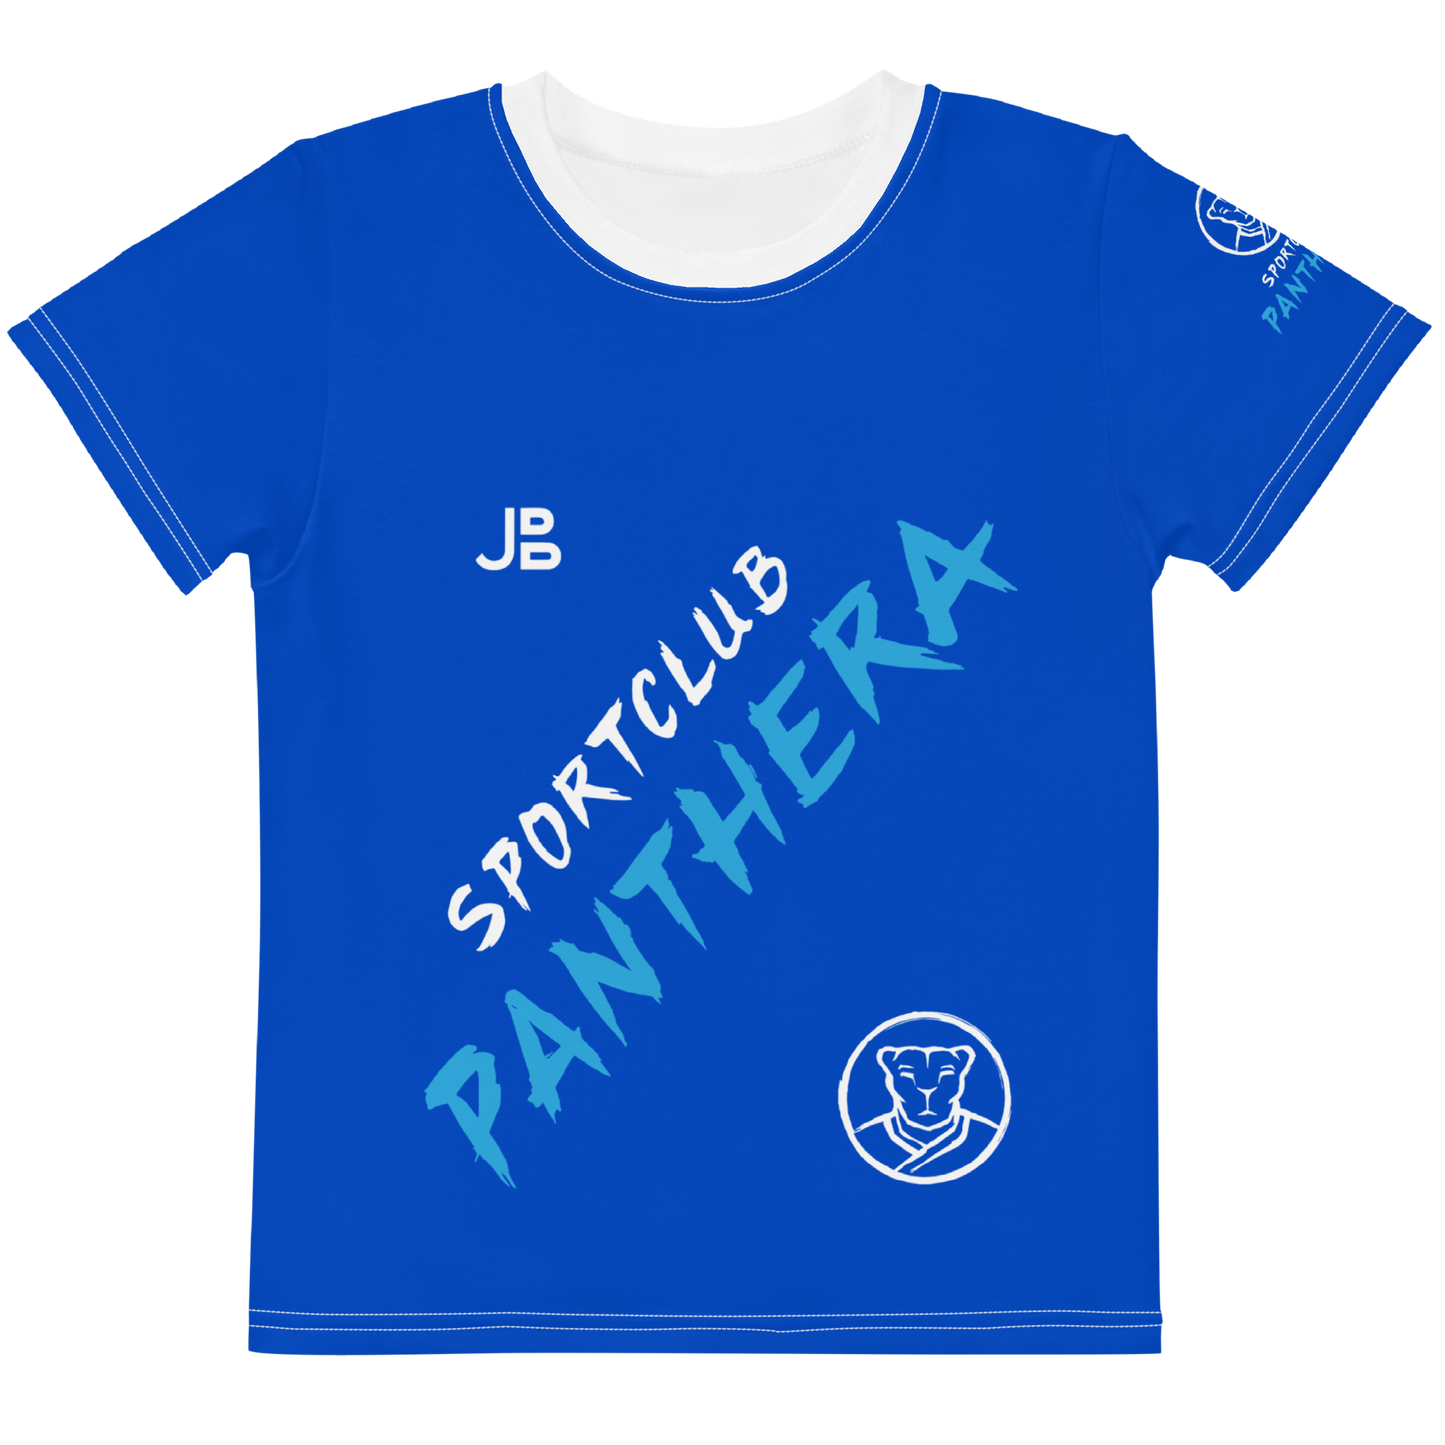 SPORTCLUB PANTHERA - Jersey Kids Fitness